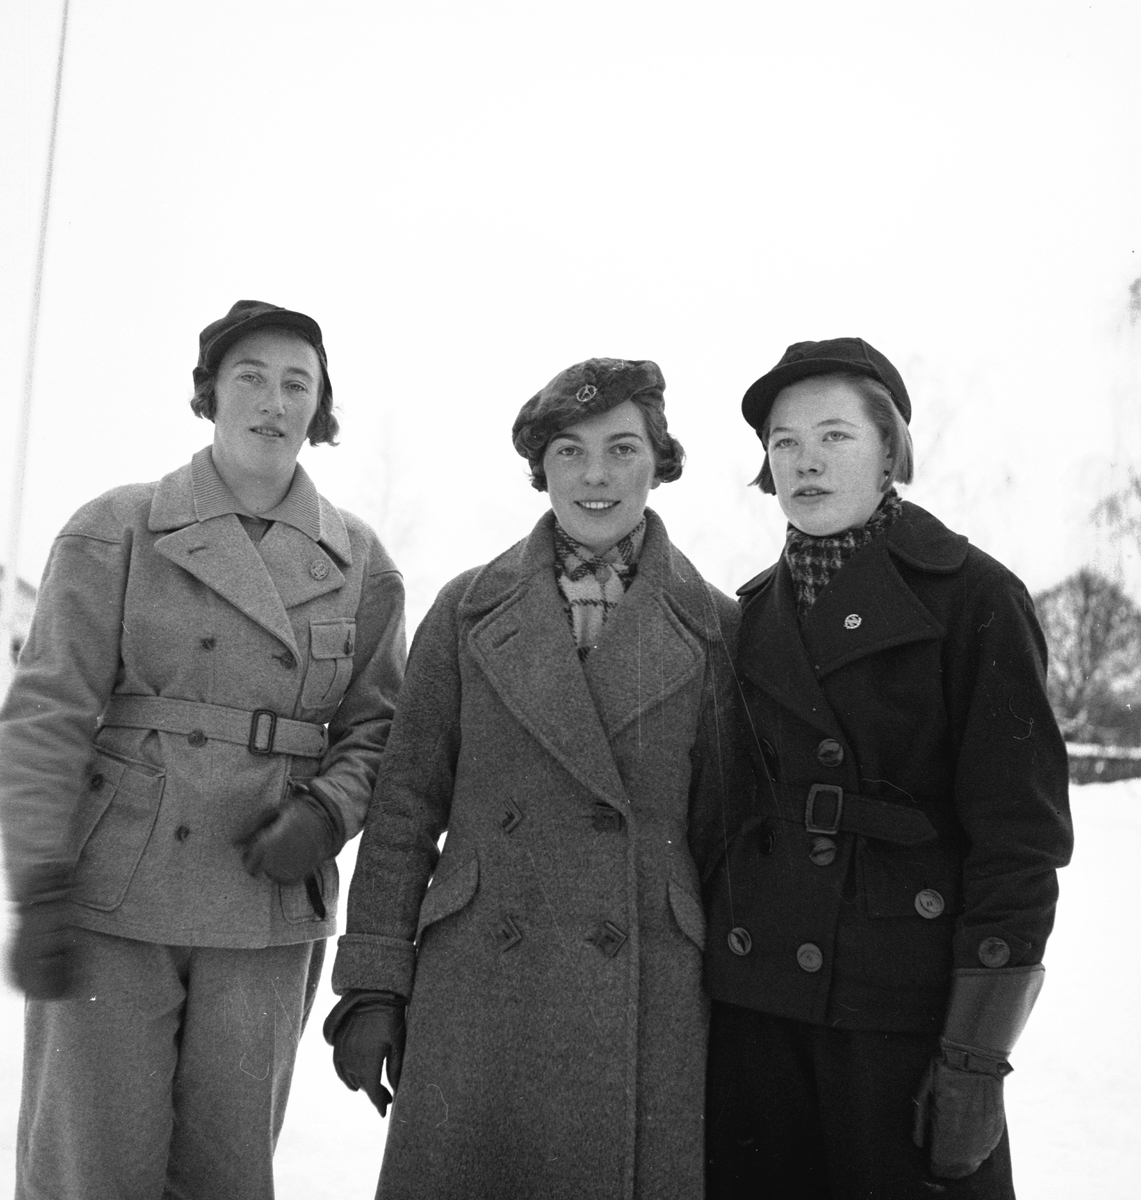 Distrikmästerskapet på 3 mil
samt damernas på 1 mil
Torsåker 2 februari 1936




